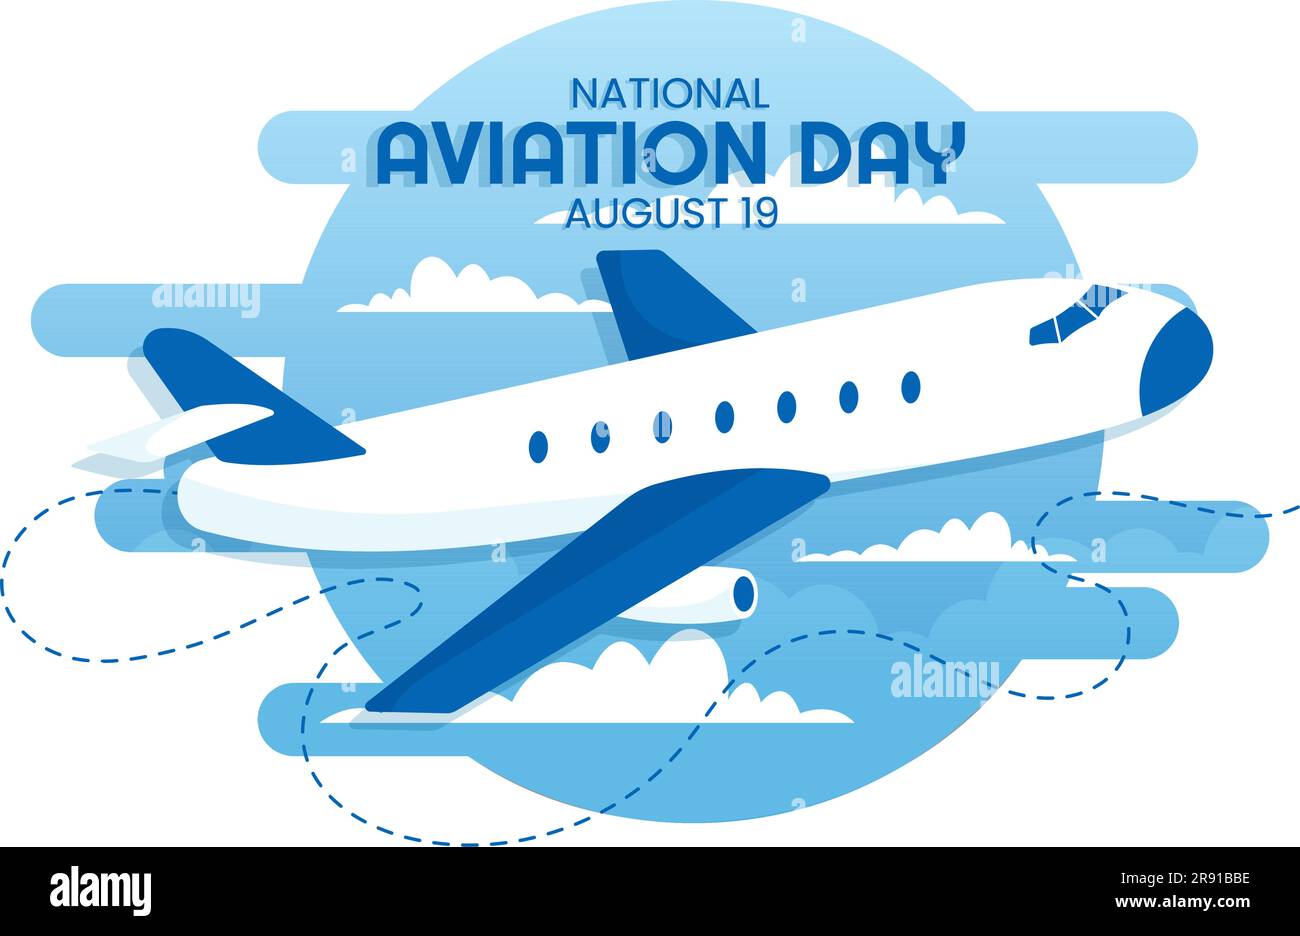 National Aviation Day Vector Illustration eines Flugzeugs mit himmelblauem Hintergrund oder Flagge der Vereinigten Staaten in flachen, handgezogenen Cartoon-Vorlagen Stock Vektor